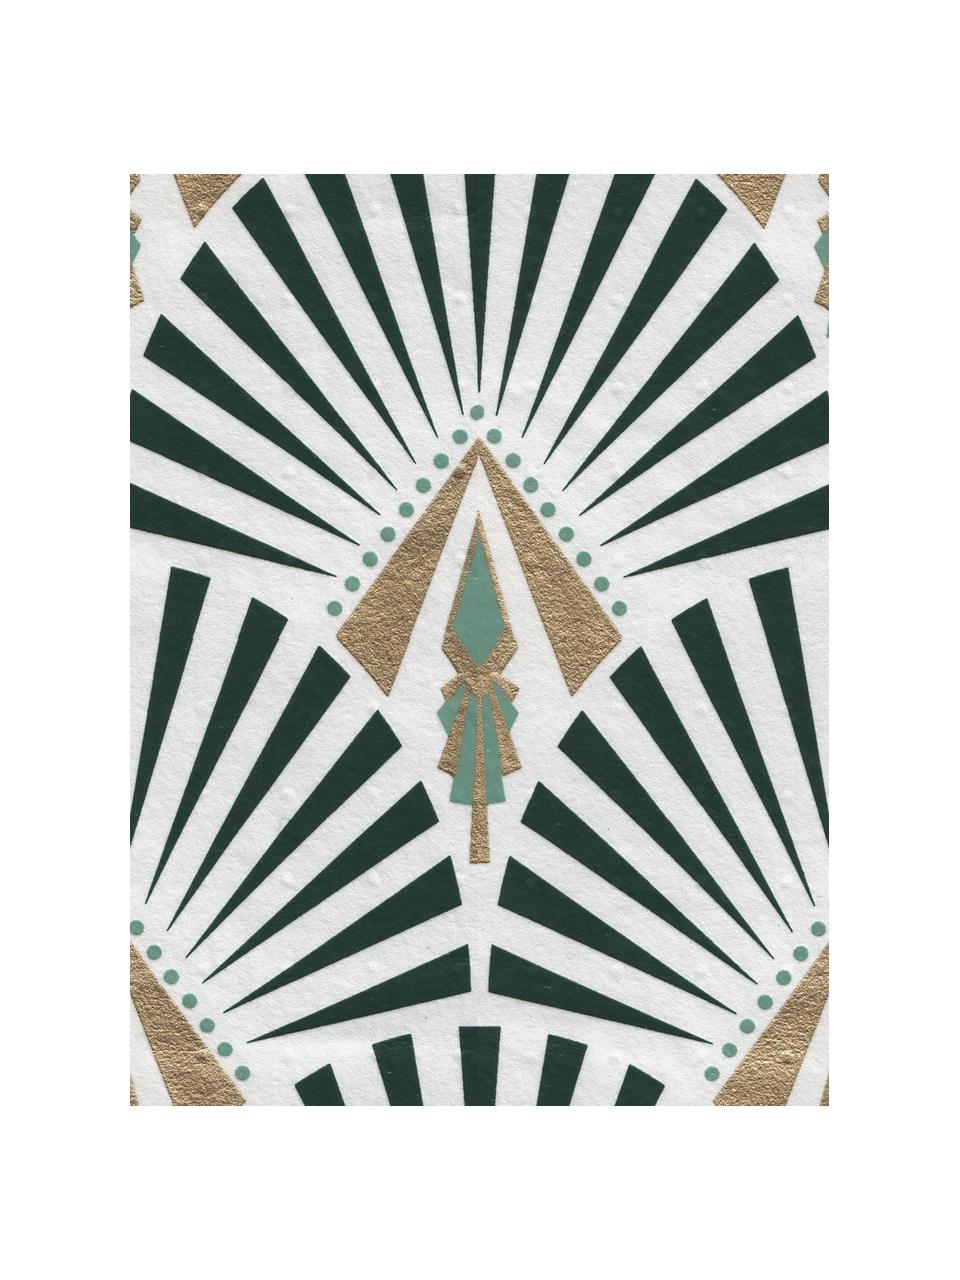 Tapeta Luxus Geometric Art, Włóknina, Biały, zielony, ciemny zielony, odcienie złotego, S 52 x W 1005 cm